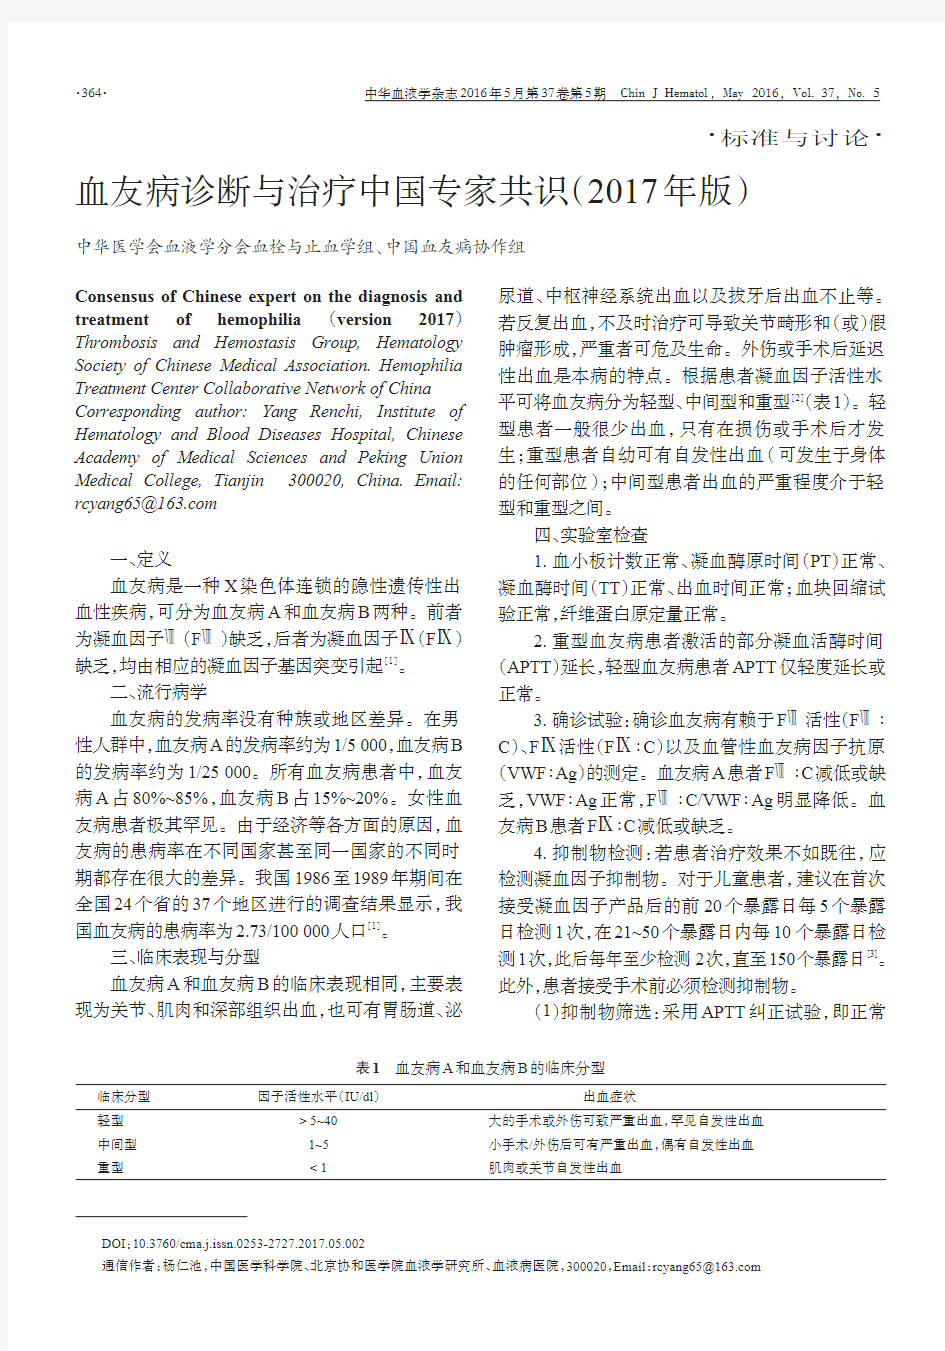 血友病诊断与治疗中国专家共识(2017年版)